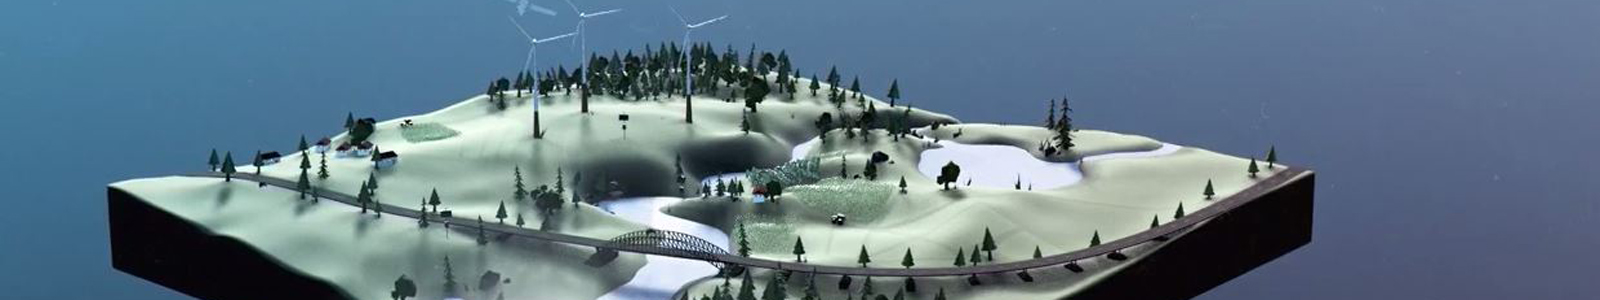 Modell einer Landschaft mit Fluss und Windrädern ©DLR